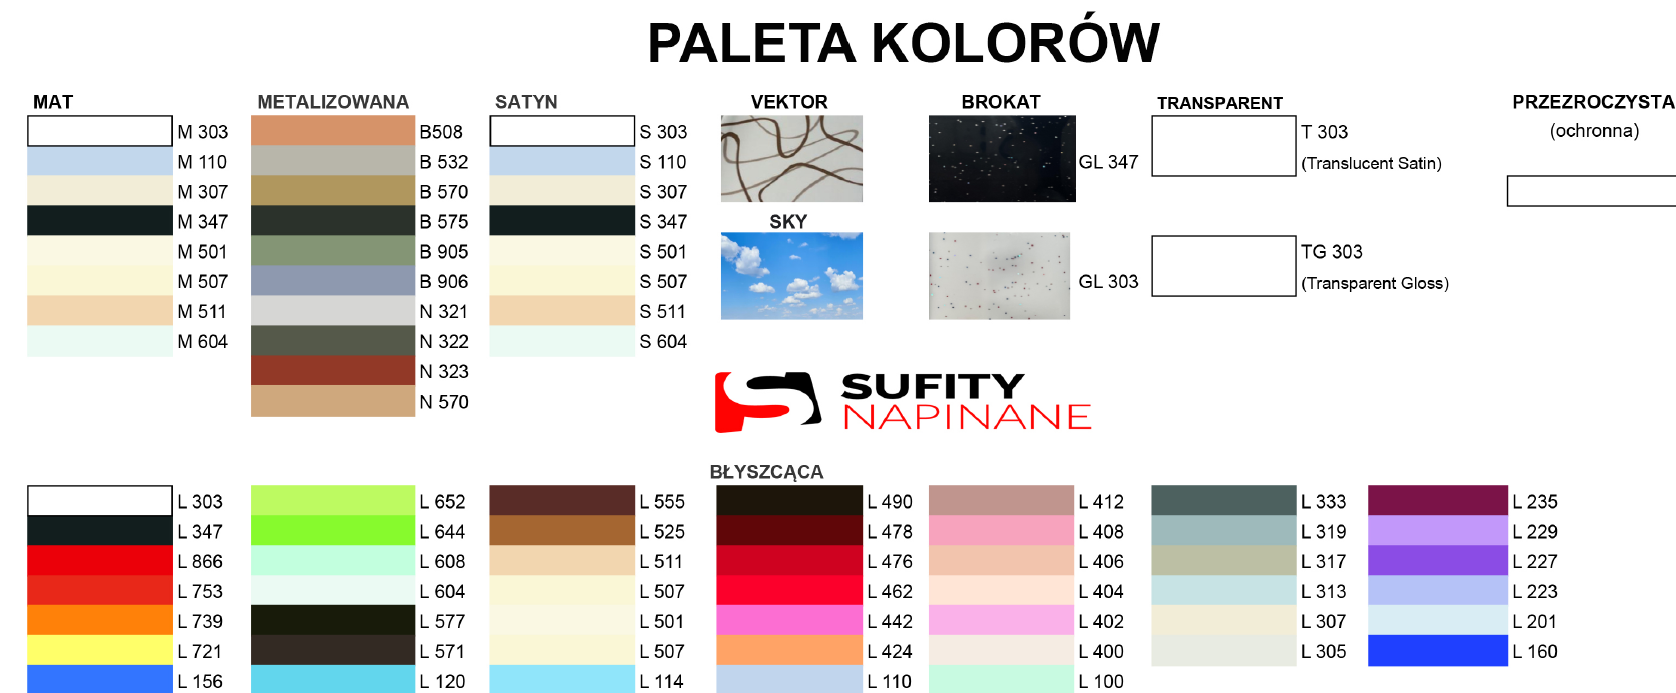 Paleta kolorów sufity napinane - www.sufitypoland.pl